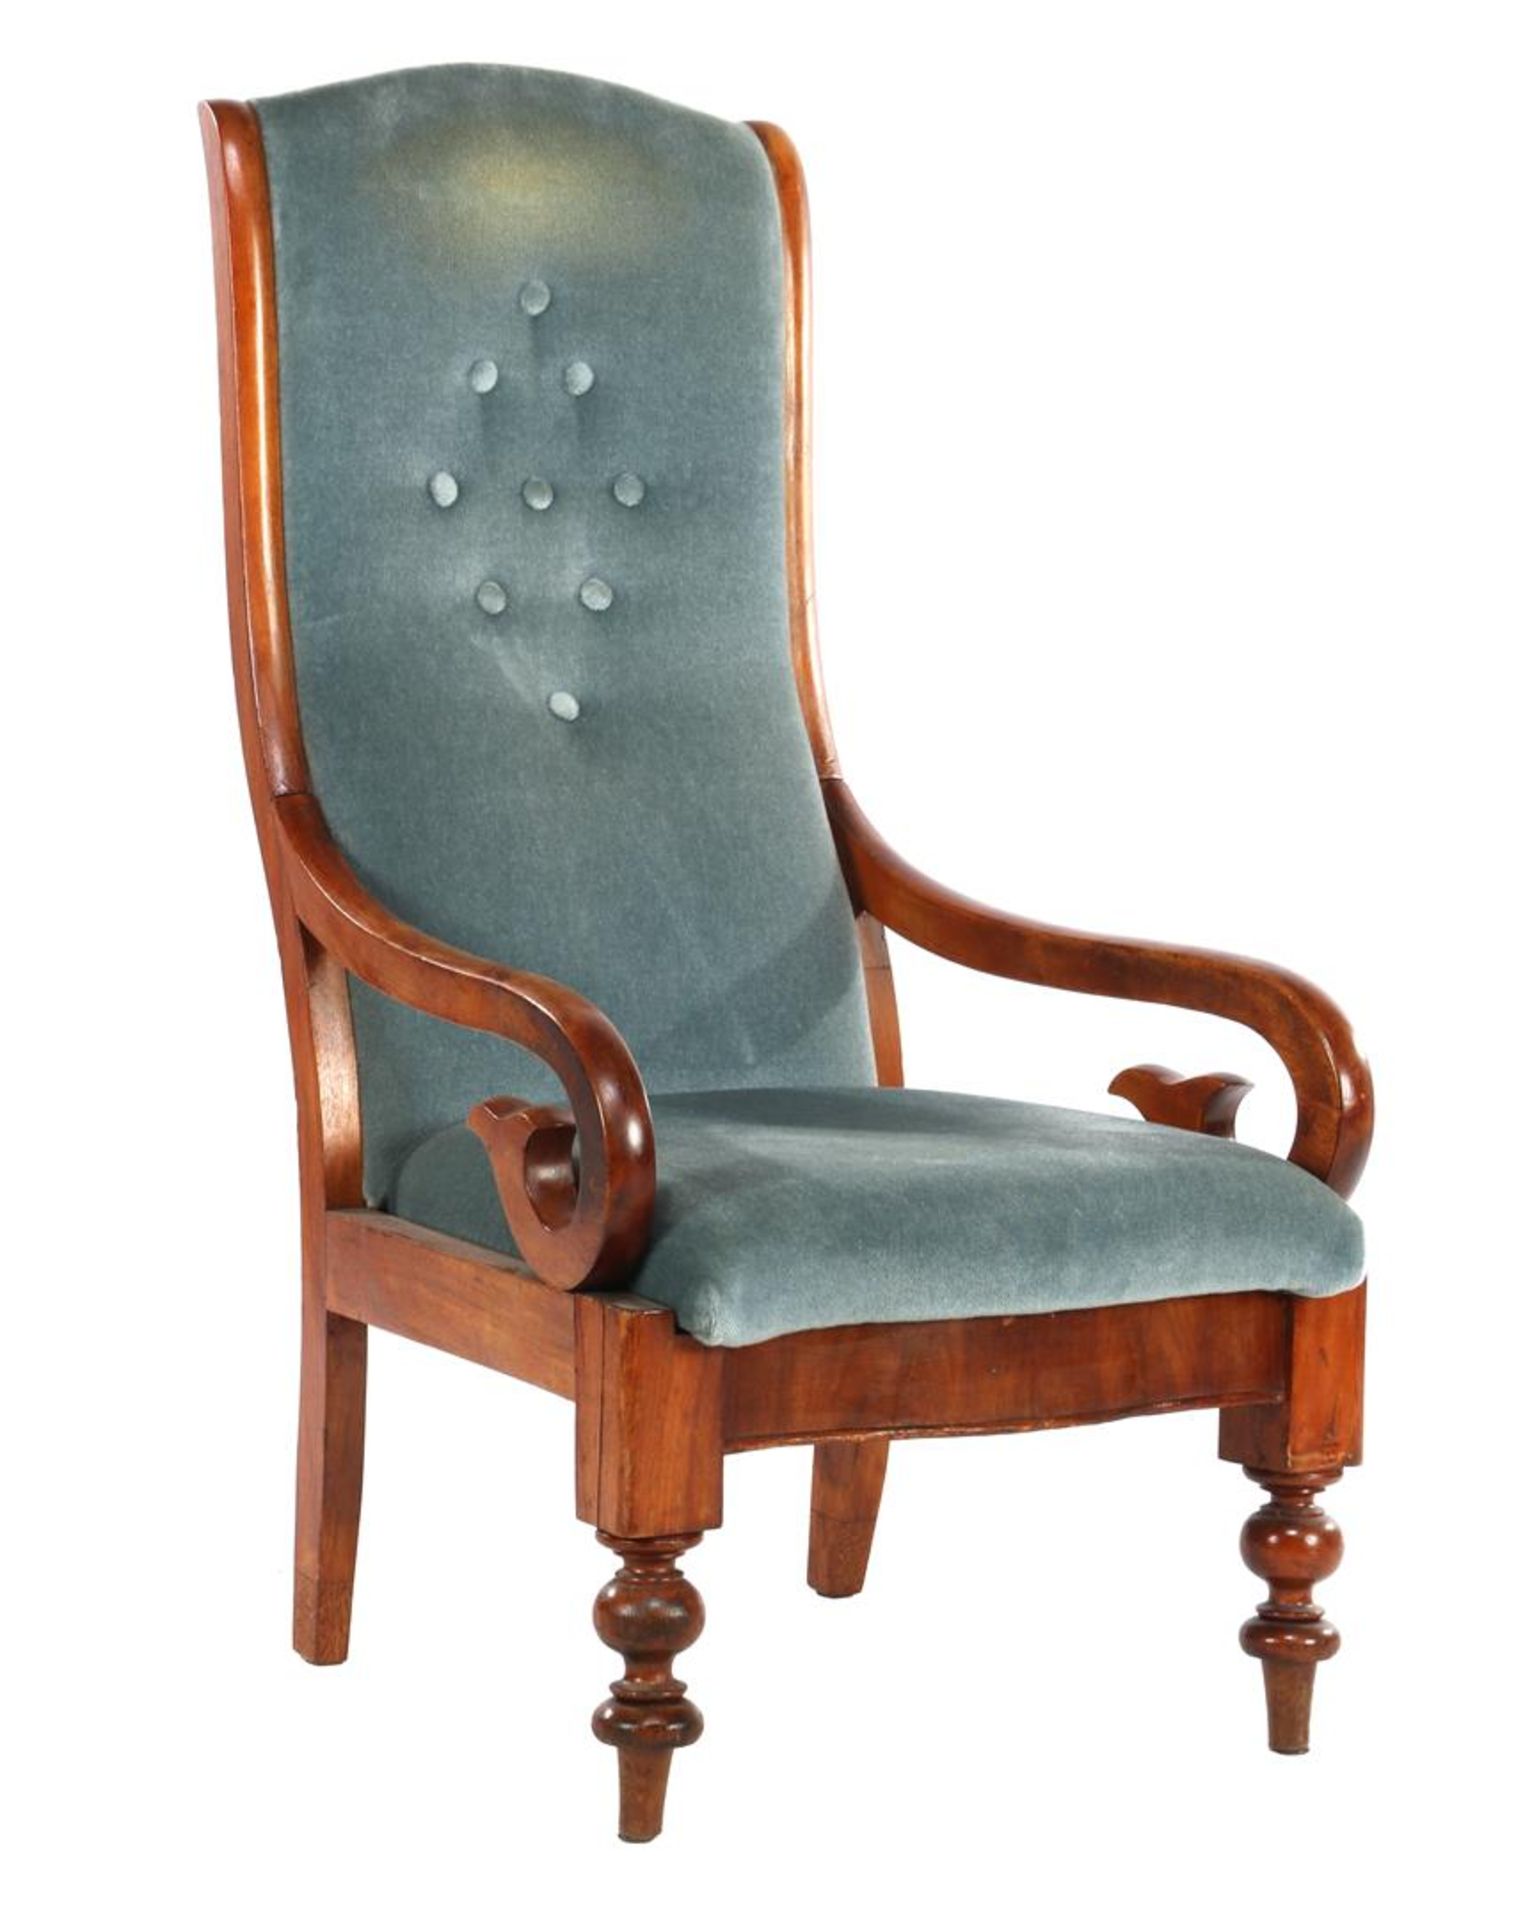 Walnut armchair with blue mohair